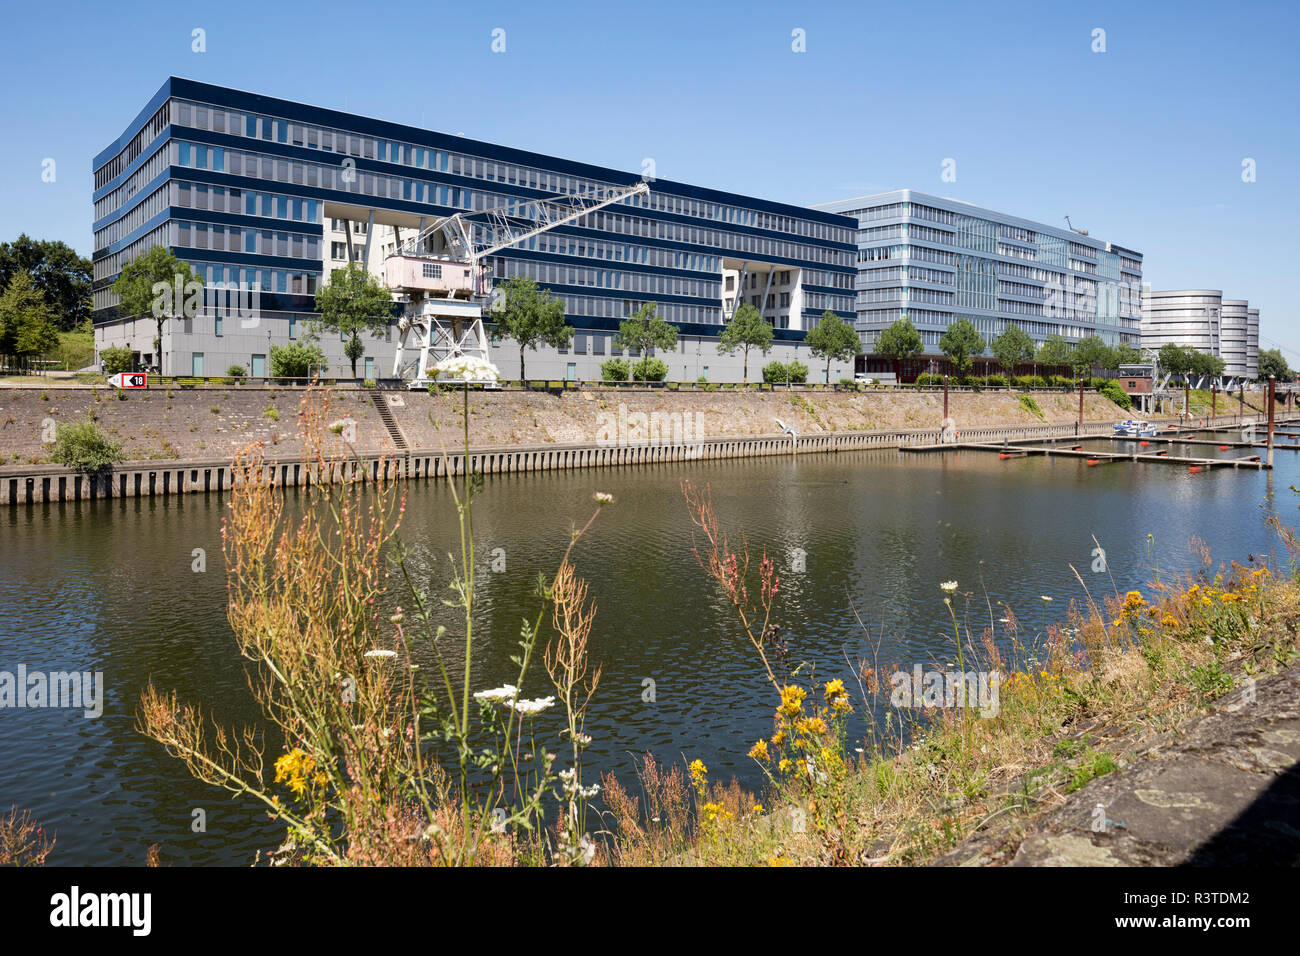 Germania, Duisburg, vista ai moderni edifici per uffici e marina al porto interno Foto Stock